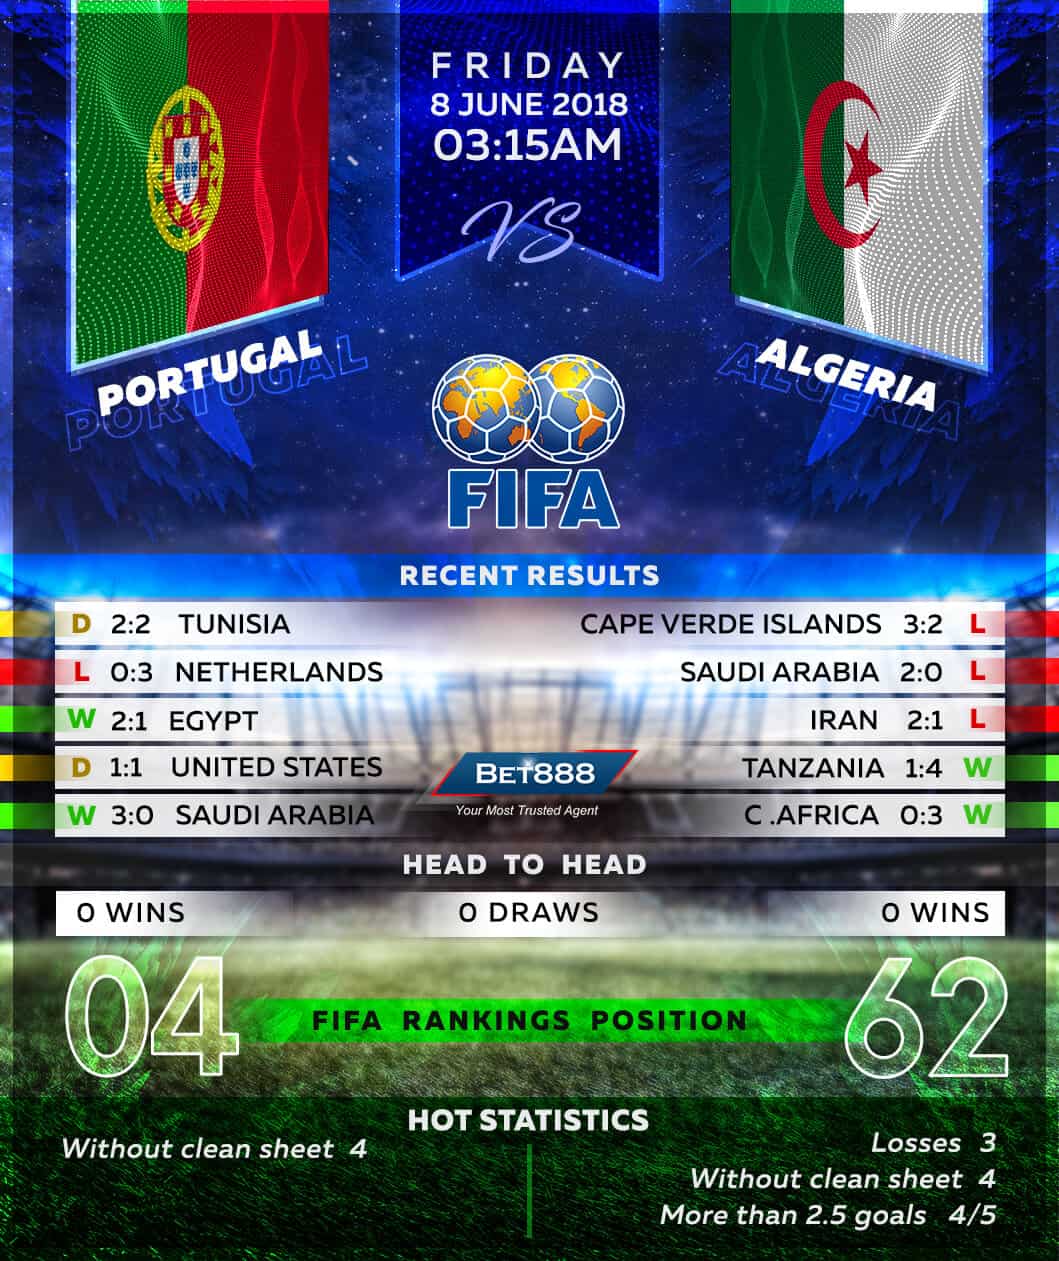 Portugal vs Algeria 08/06/18